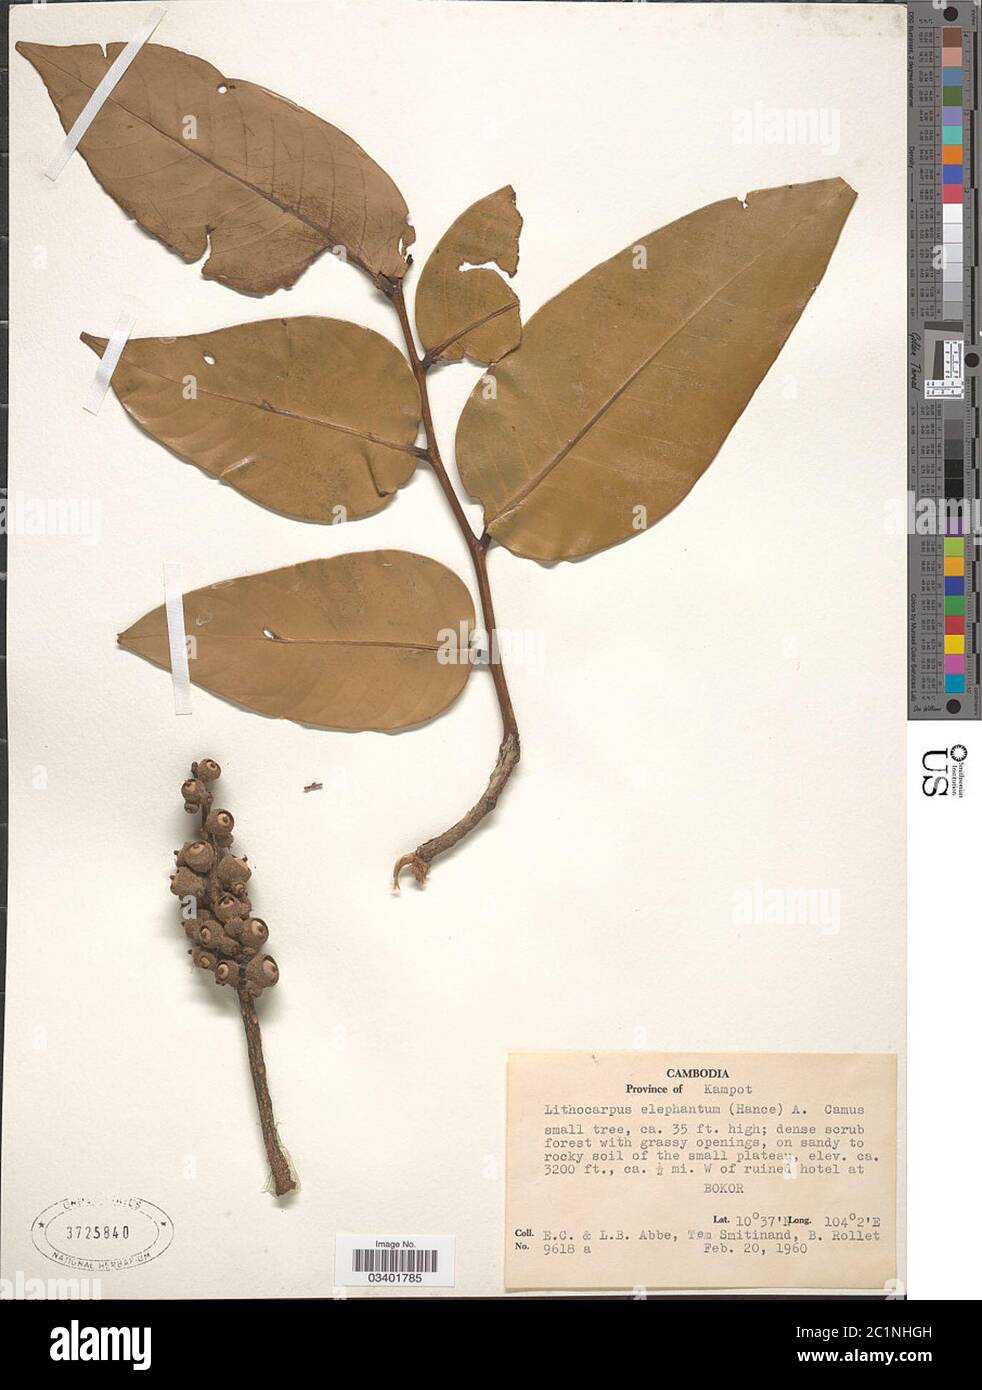 Lithocarpus elephantus Hance A Camus Lithocarpus elephantus Hance A Camus. Stock Photo